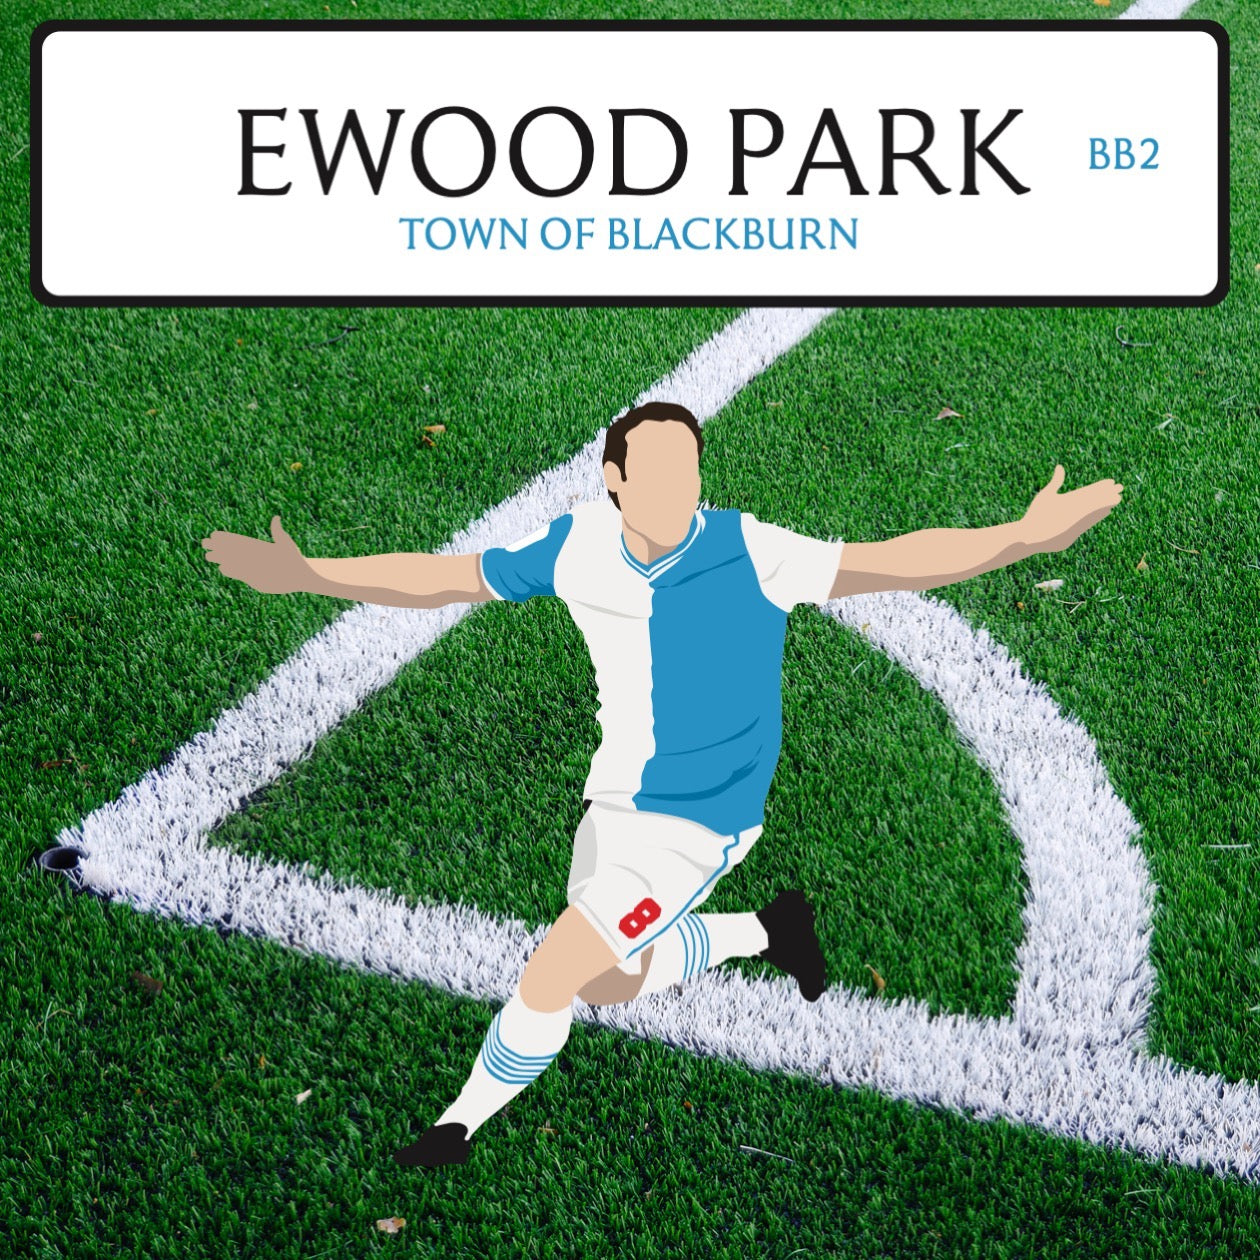 Ewood Park Armchair (Blackburn Rovers FC)